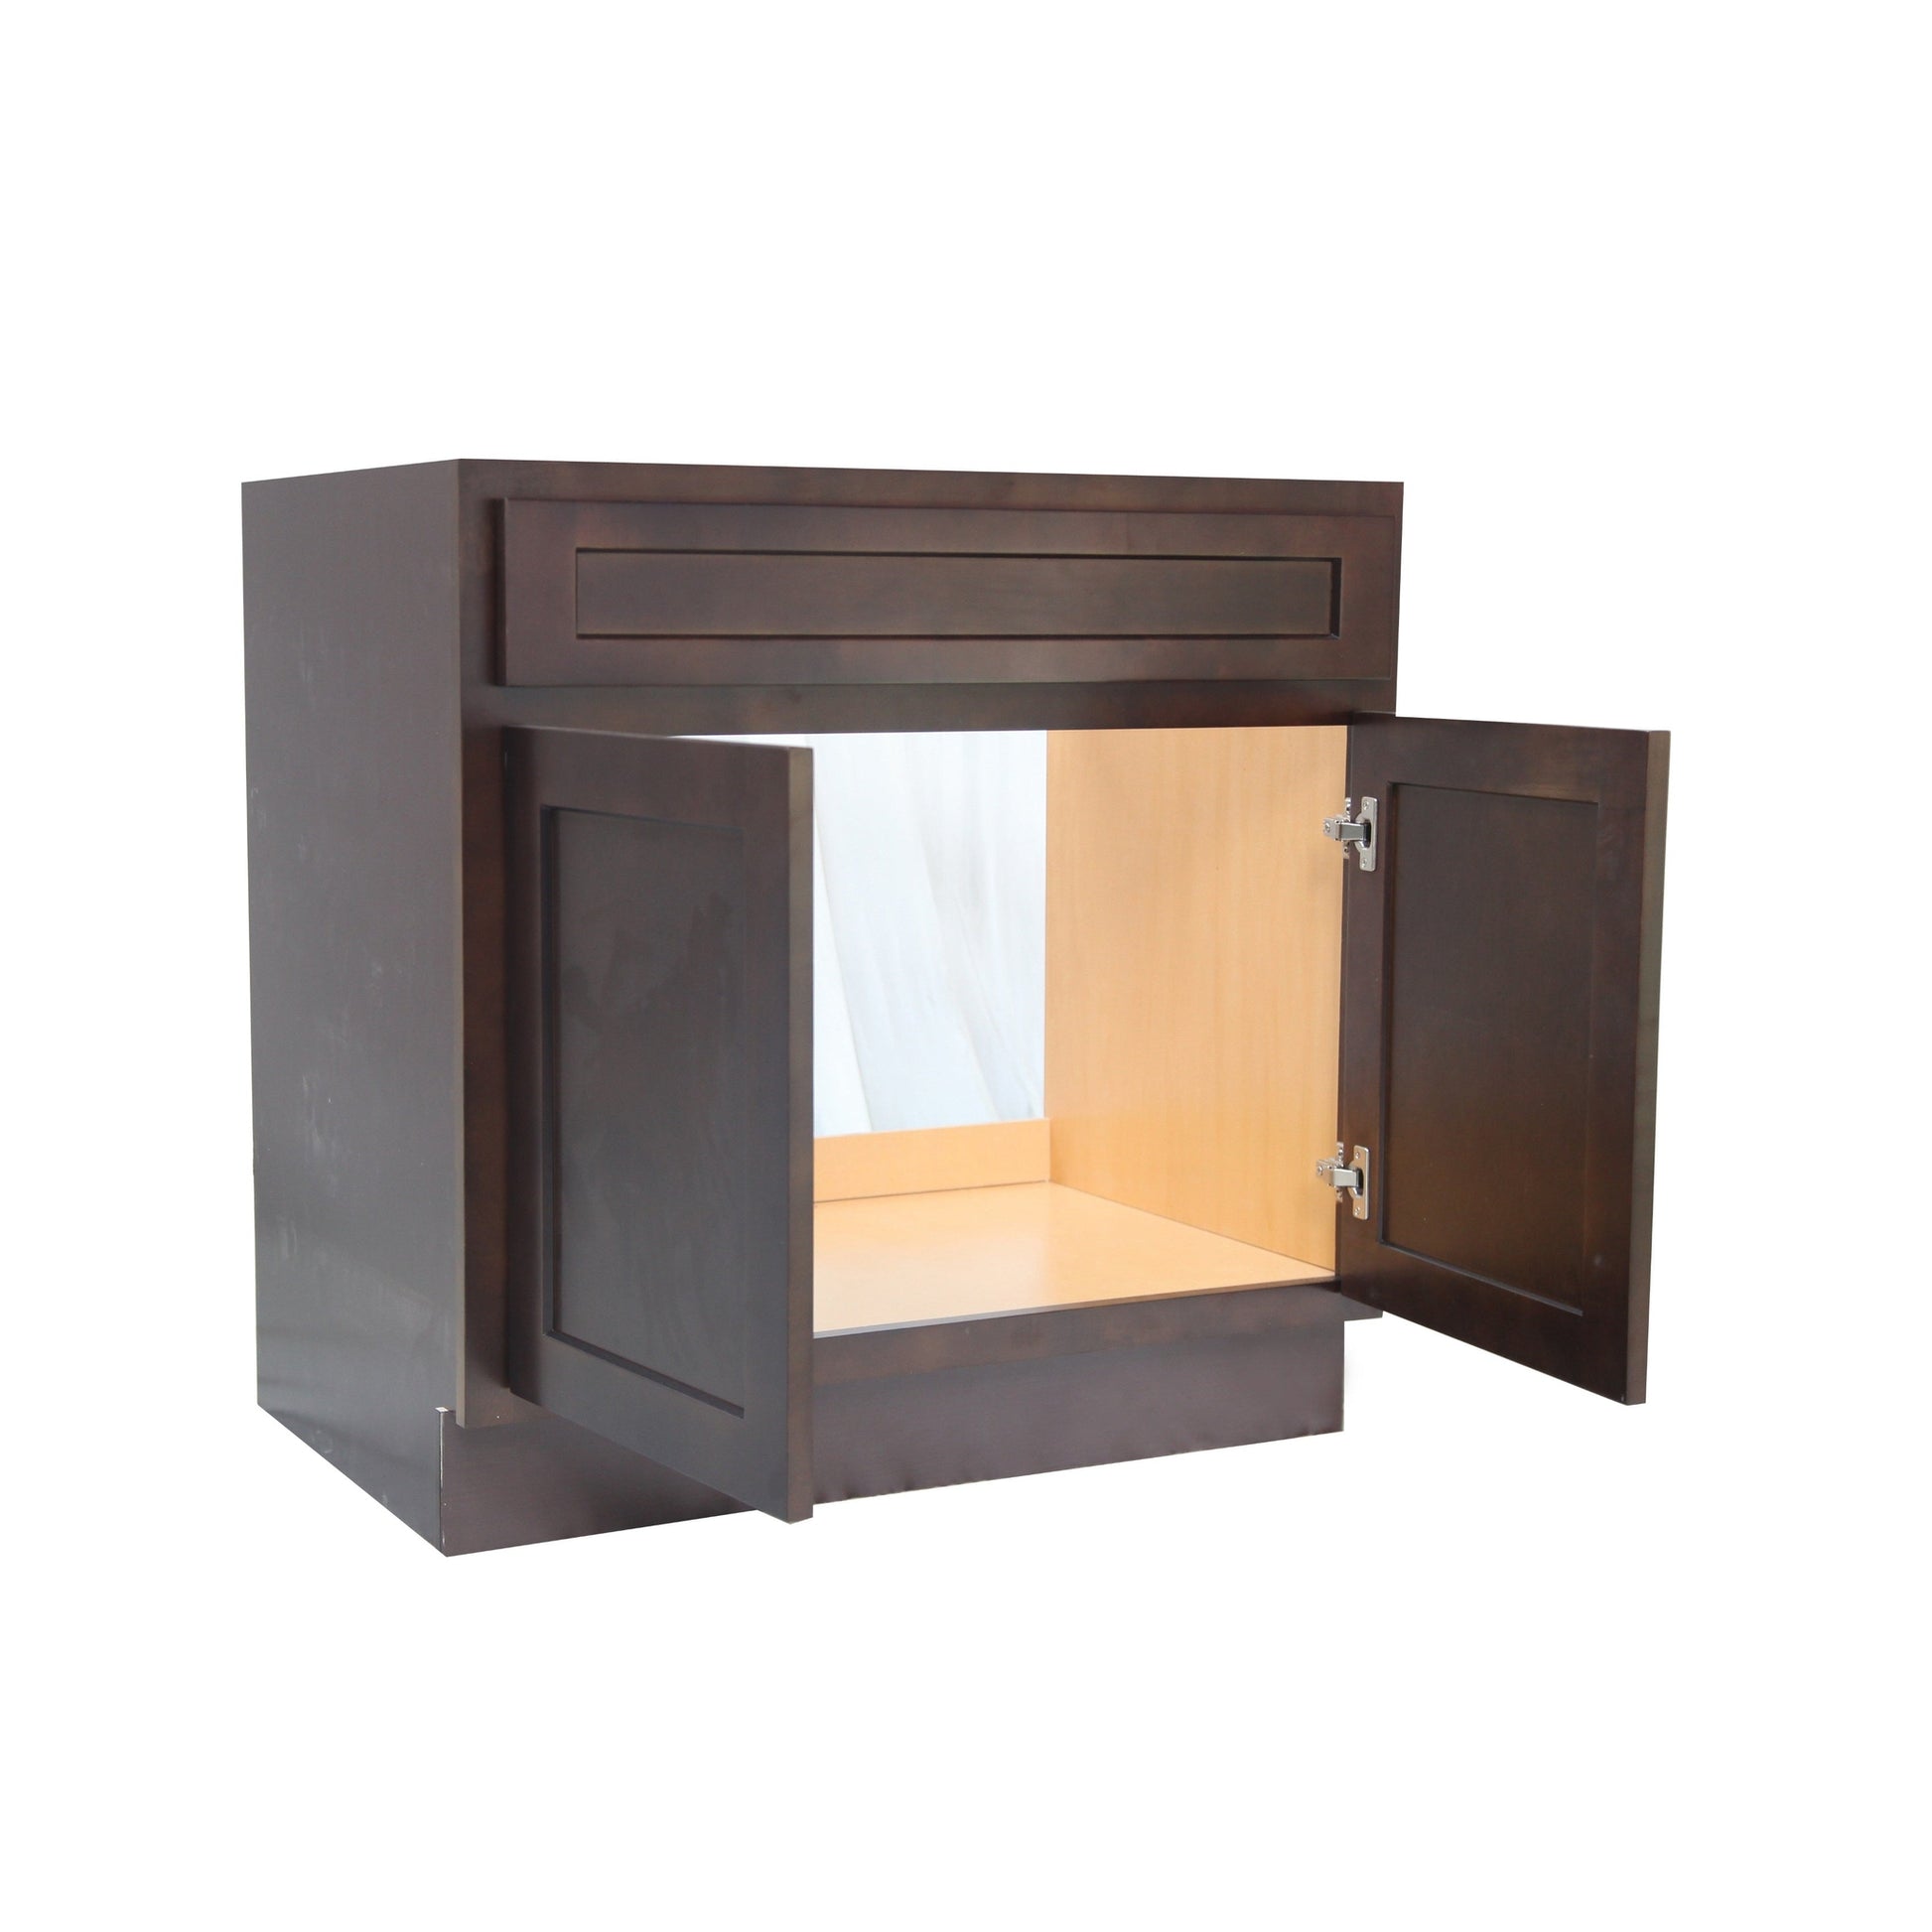 Vanity Art 33" Brown Freestanding Solid Wood Vanity Cabinet With Double Soft Closing Doors